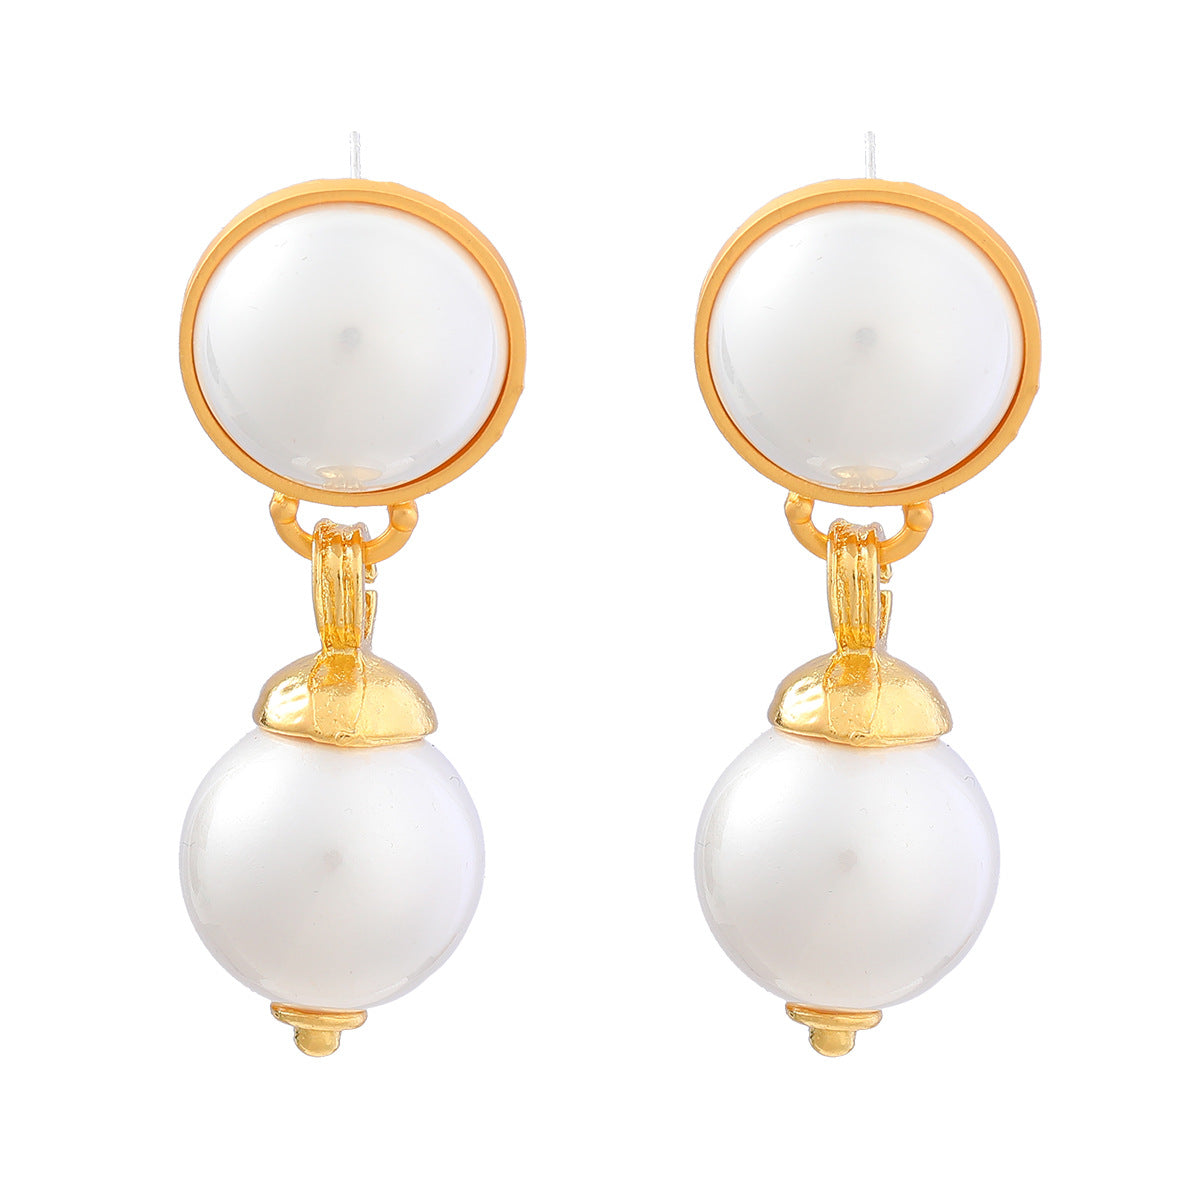 women's elegant earrings with pearl earrings